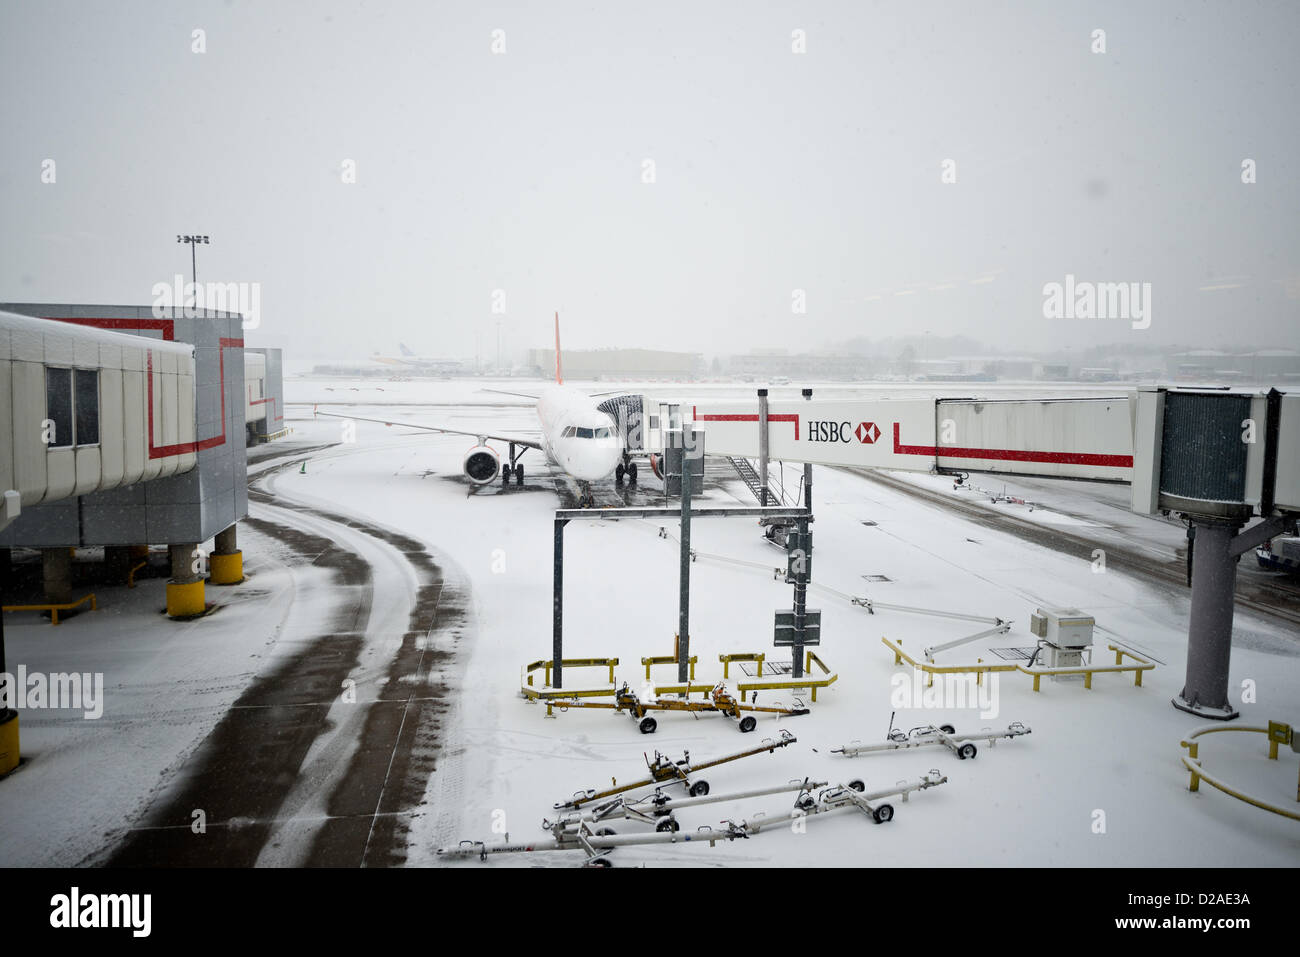 Gatwick, UK. 18. Januar 2013. Bild von Flugzeug am Stand während Schnee Störung. Bildnachweis: Chris Northcote / Alamy Live News Stockfoto